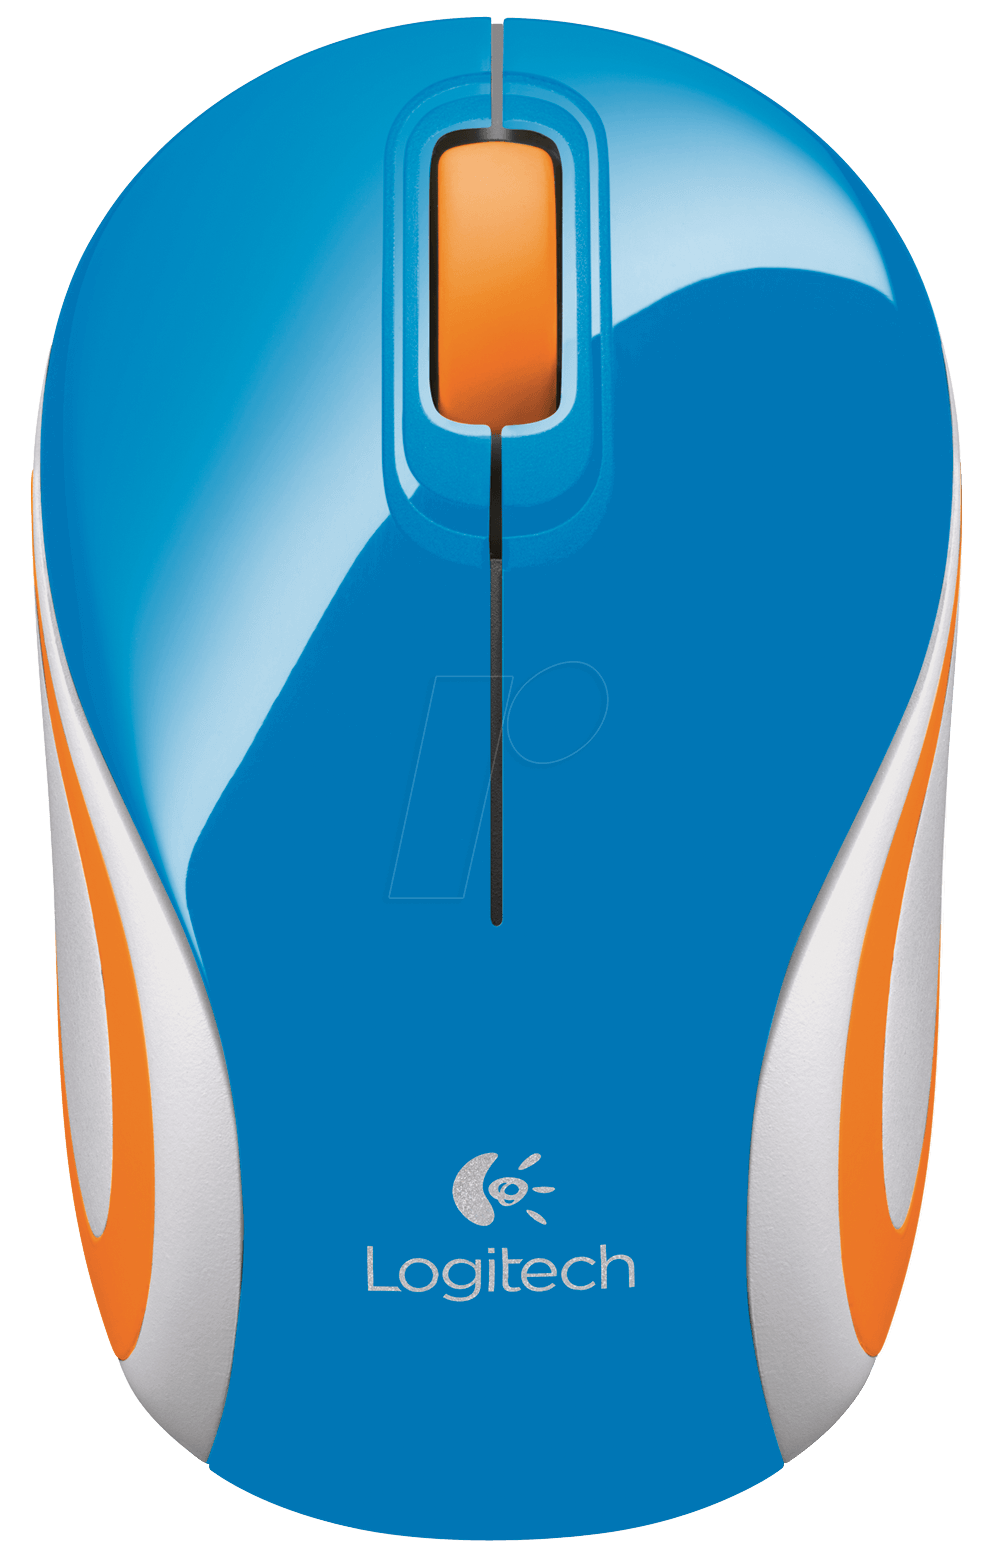 Logitech m bl blue. Clipart mouse wireless mouse